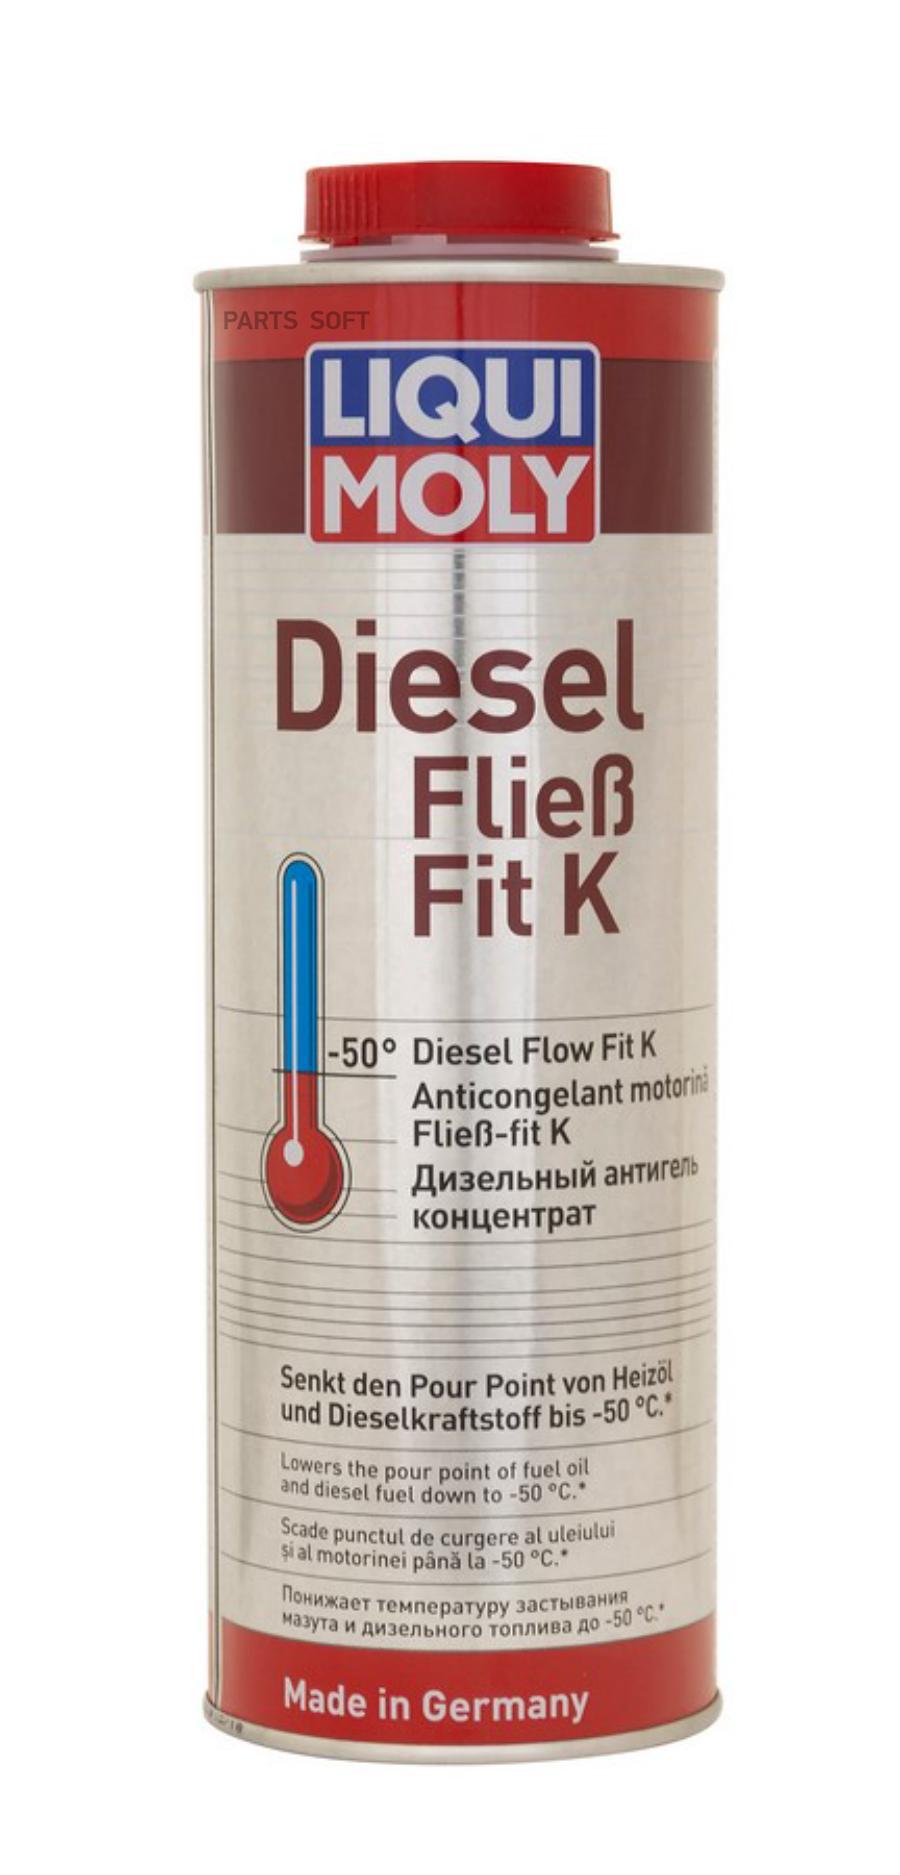 LIQUI MOLY Дизельный антигель концентрат Diesel Fliess-Fit K, 1л 1878